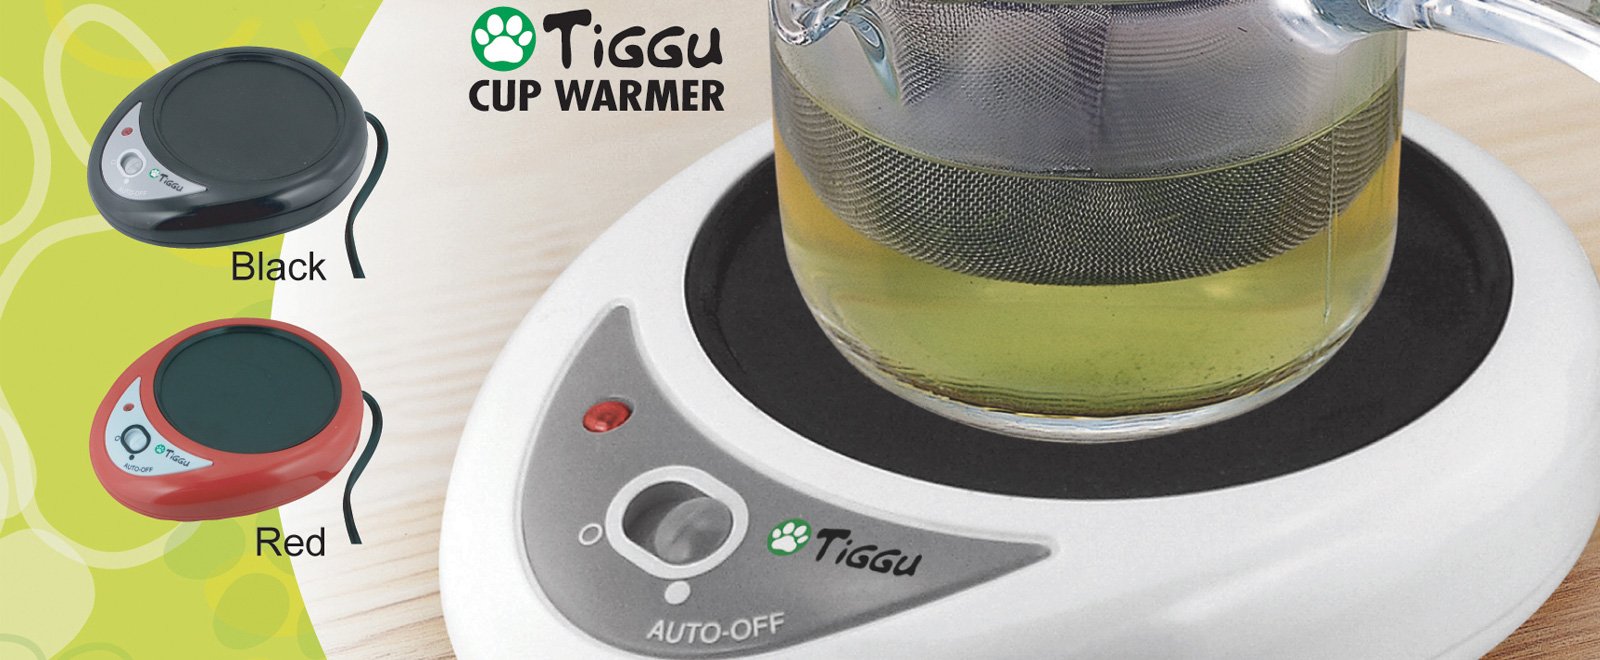 Cup Warmer Basic